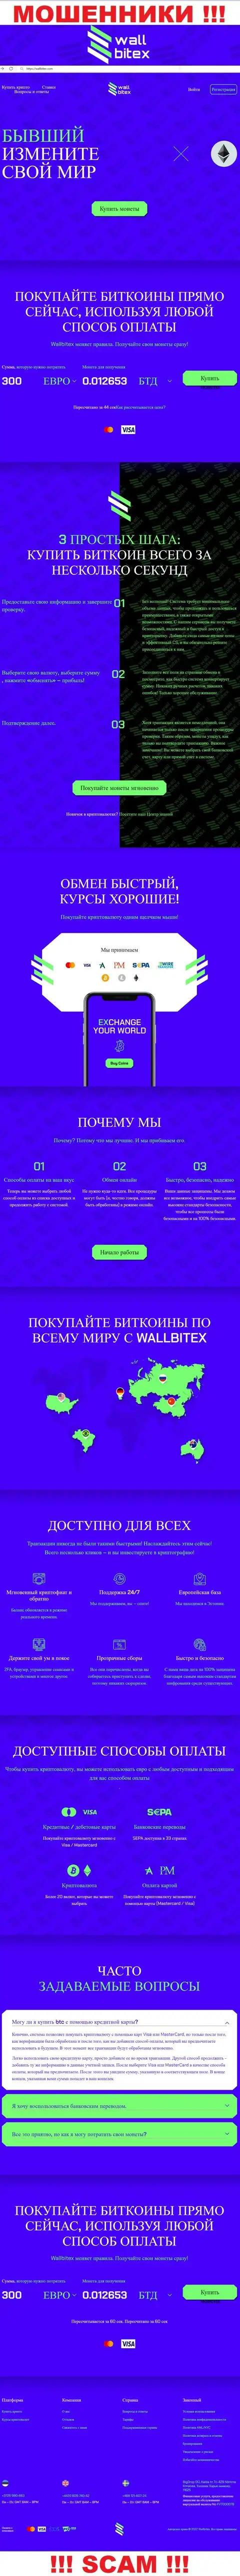 WallBitex Com - это официальный сайт противозаконно действующей компании WallBitex Com